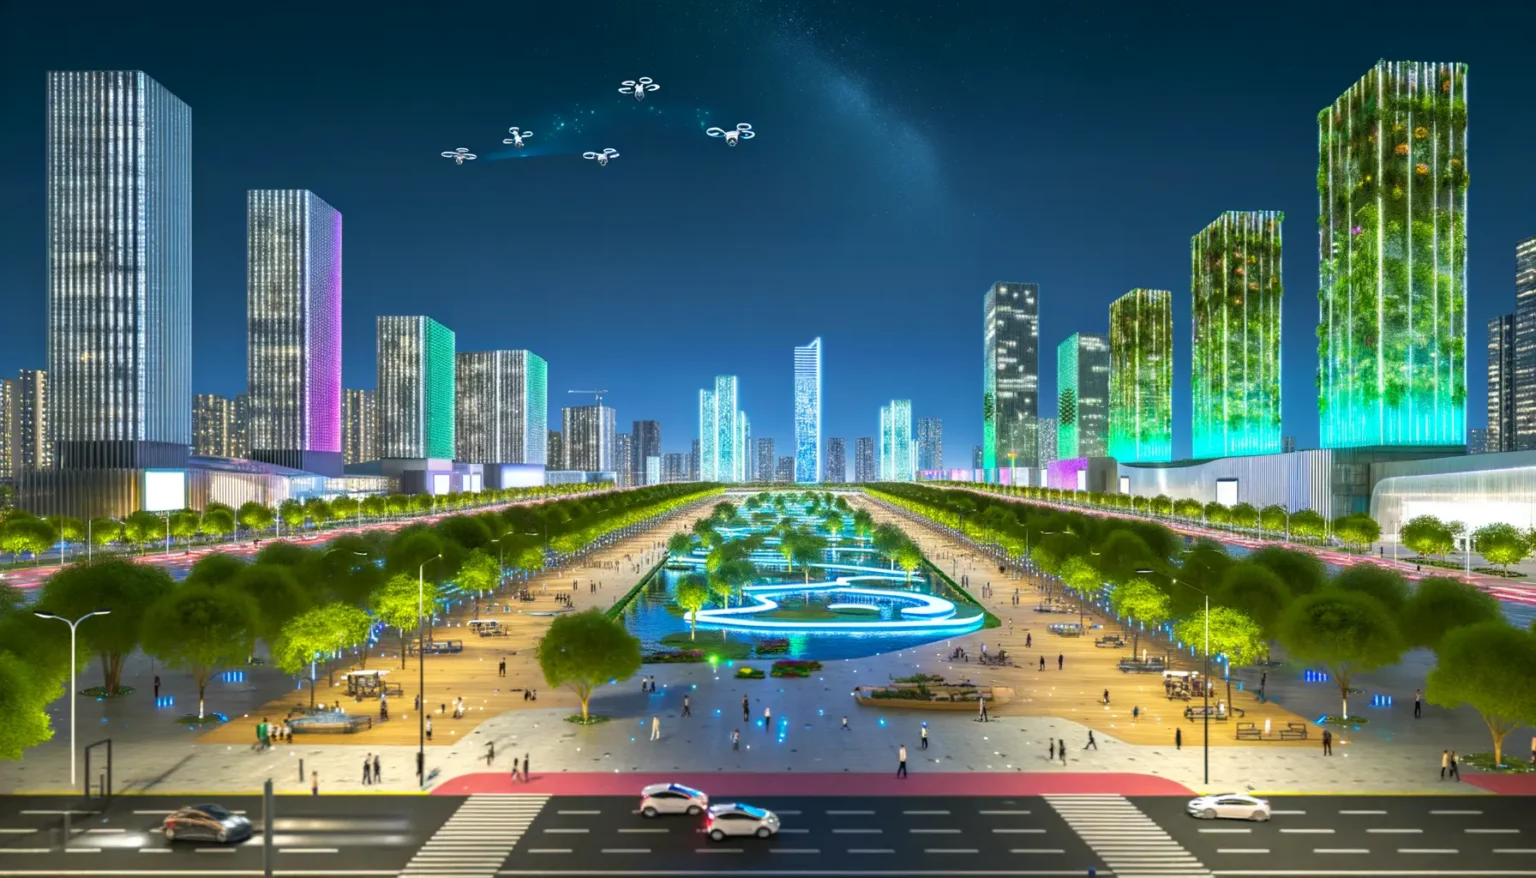 Ein futuristisches Stadtbild bei Nacht mit beleuchteten Hochhäusern, von denen einige mit vertikalen Gärten bedeckt sind, und einer belebten Promenade mit Bäumen und einem künstlichen Fluss. Im Himmel sind Drohnen zu sehen und über dem Horizont sind Sterne sichtbar.